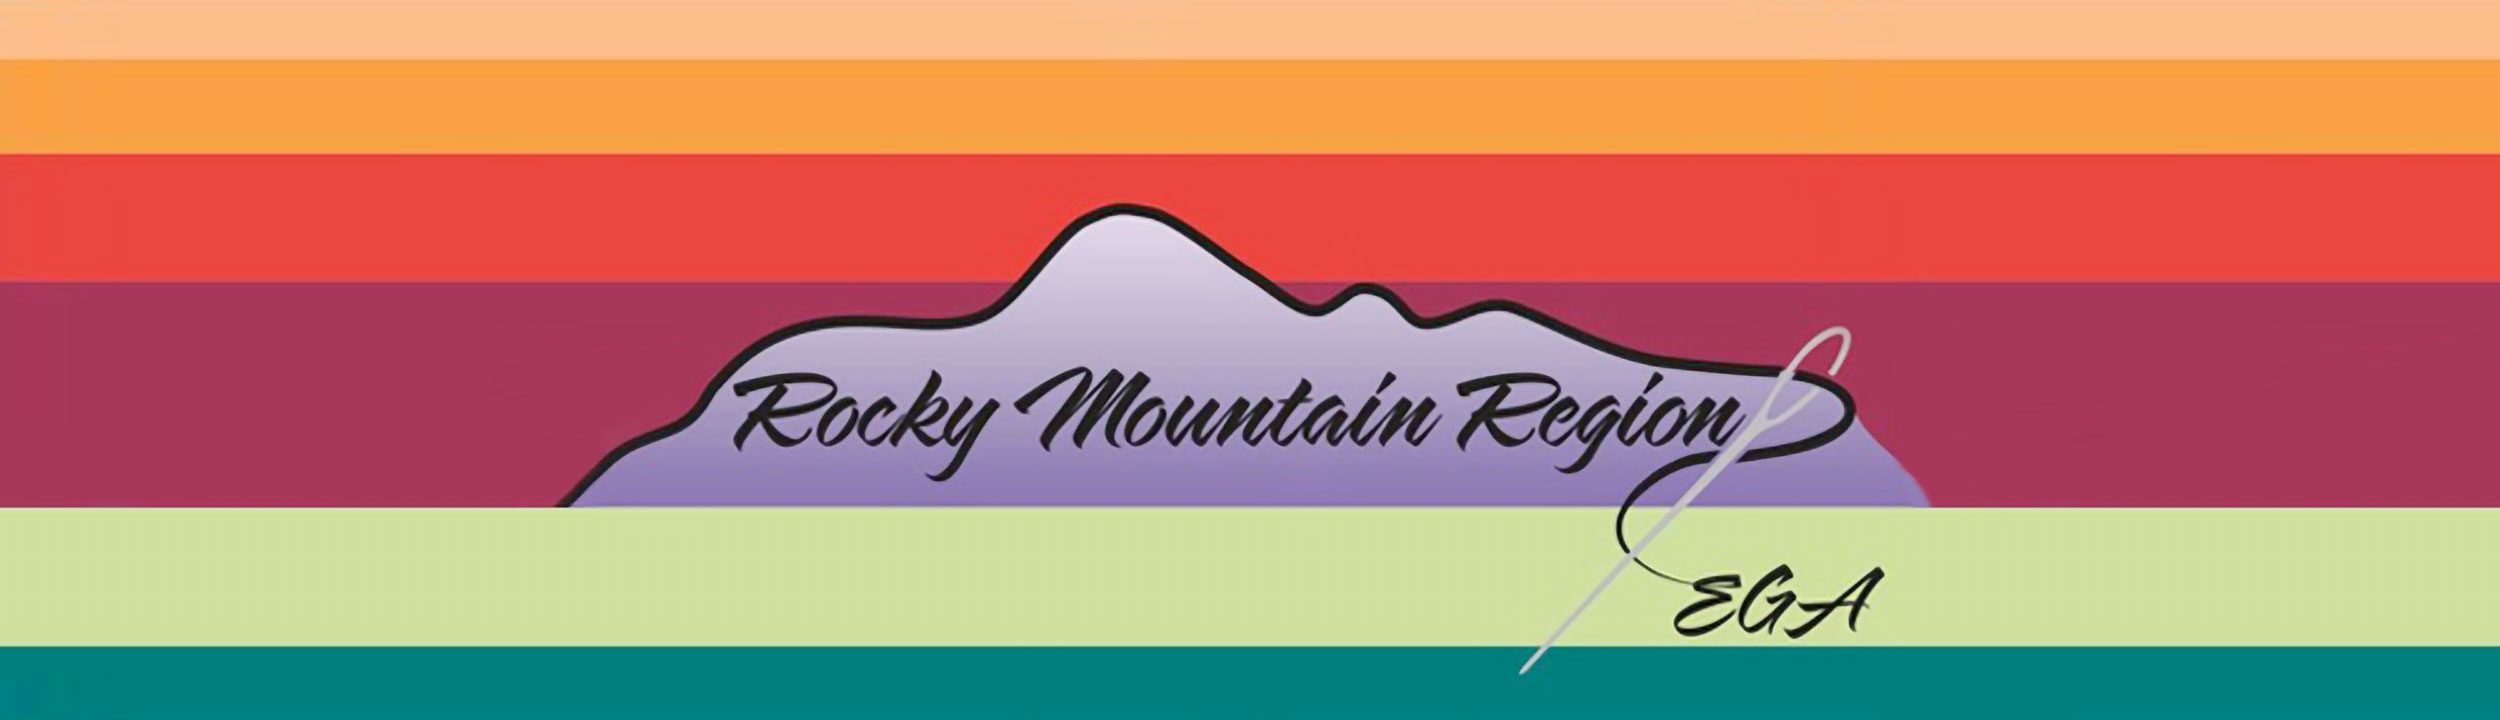 Rocky Mountain Region